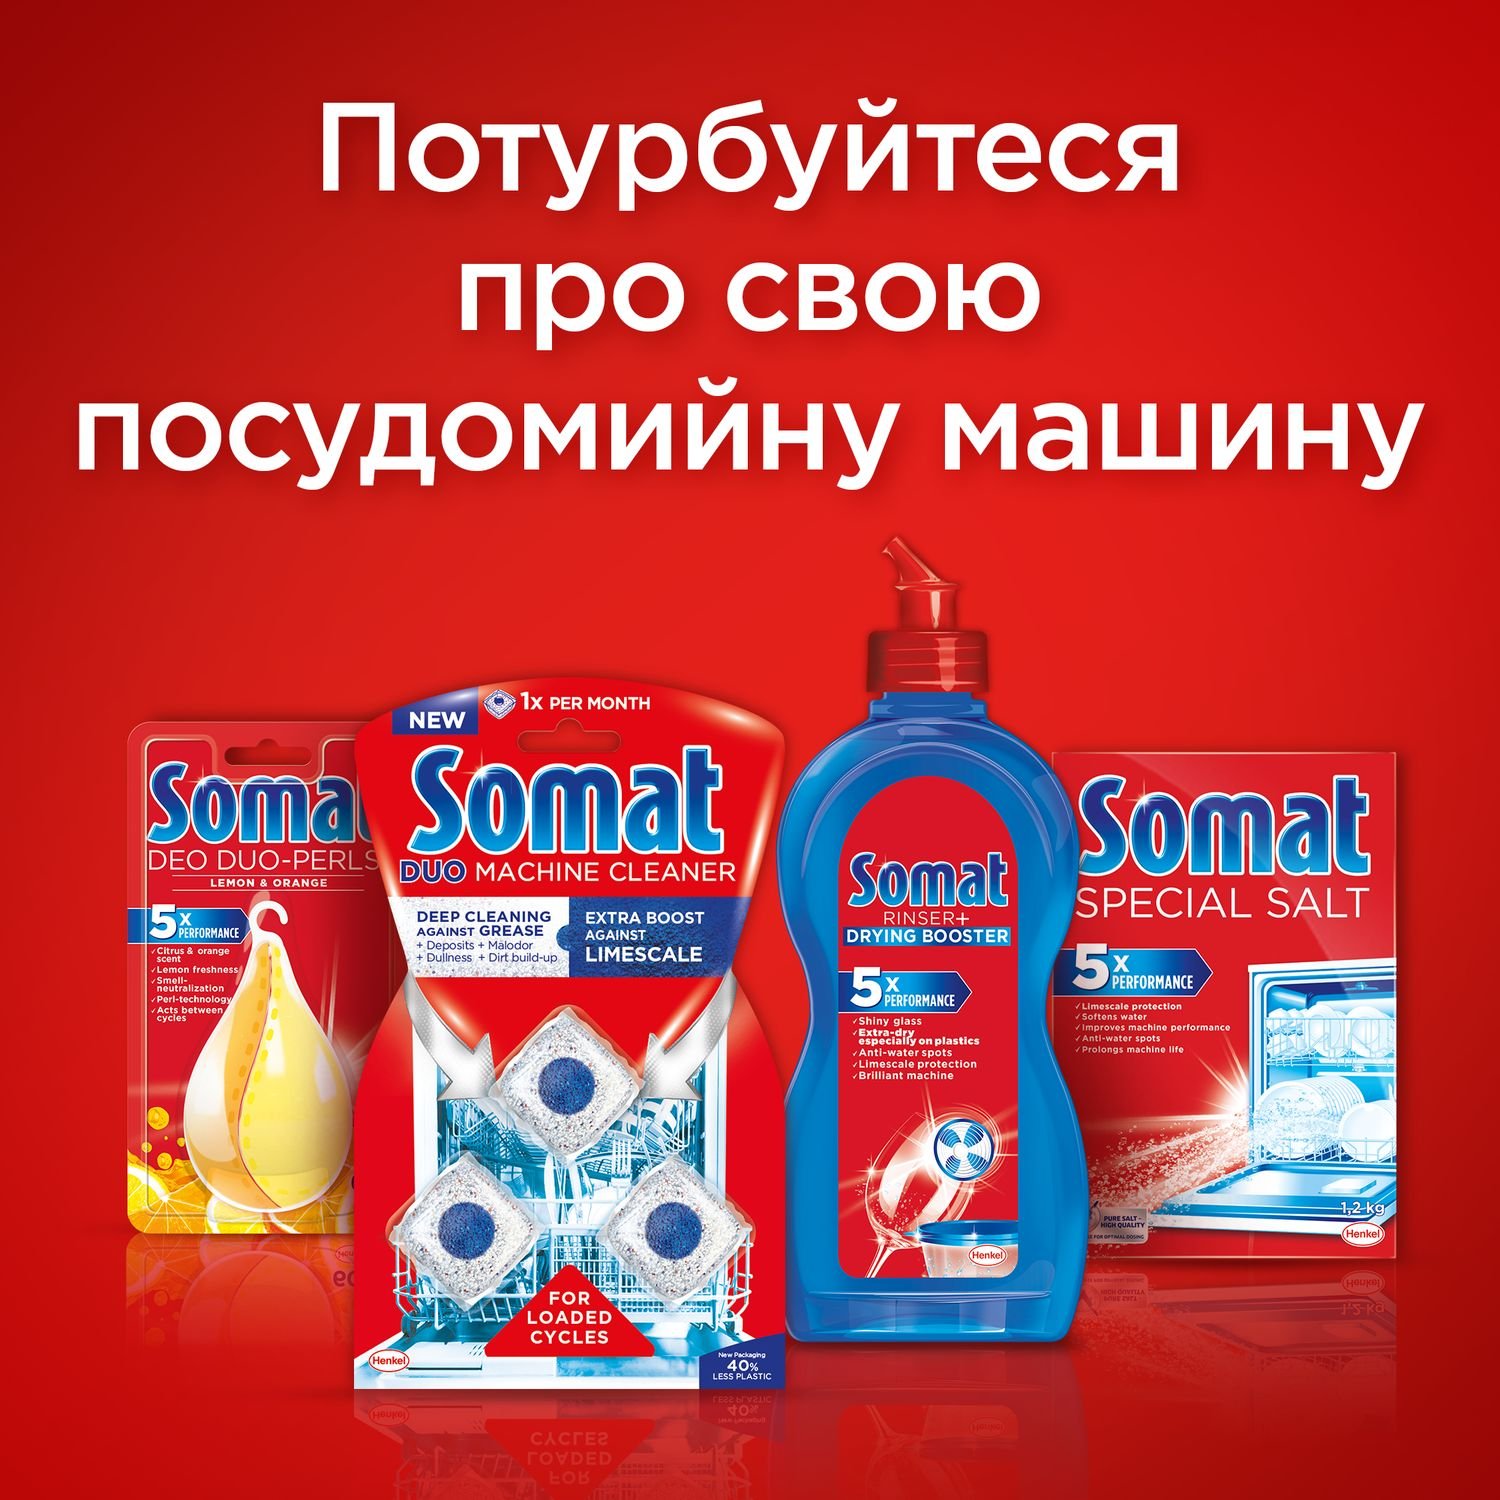 Таблетки для мытья посуды в посудомоечной машине Somat Classic, 57 таблеток - фото 8